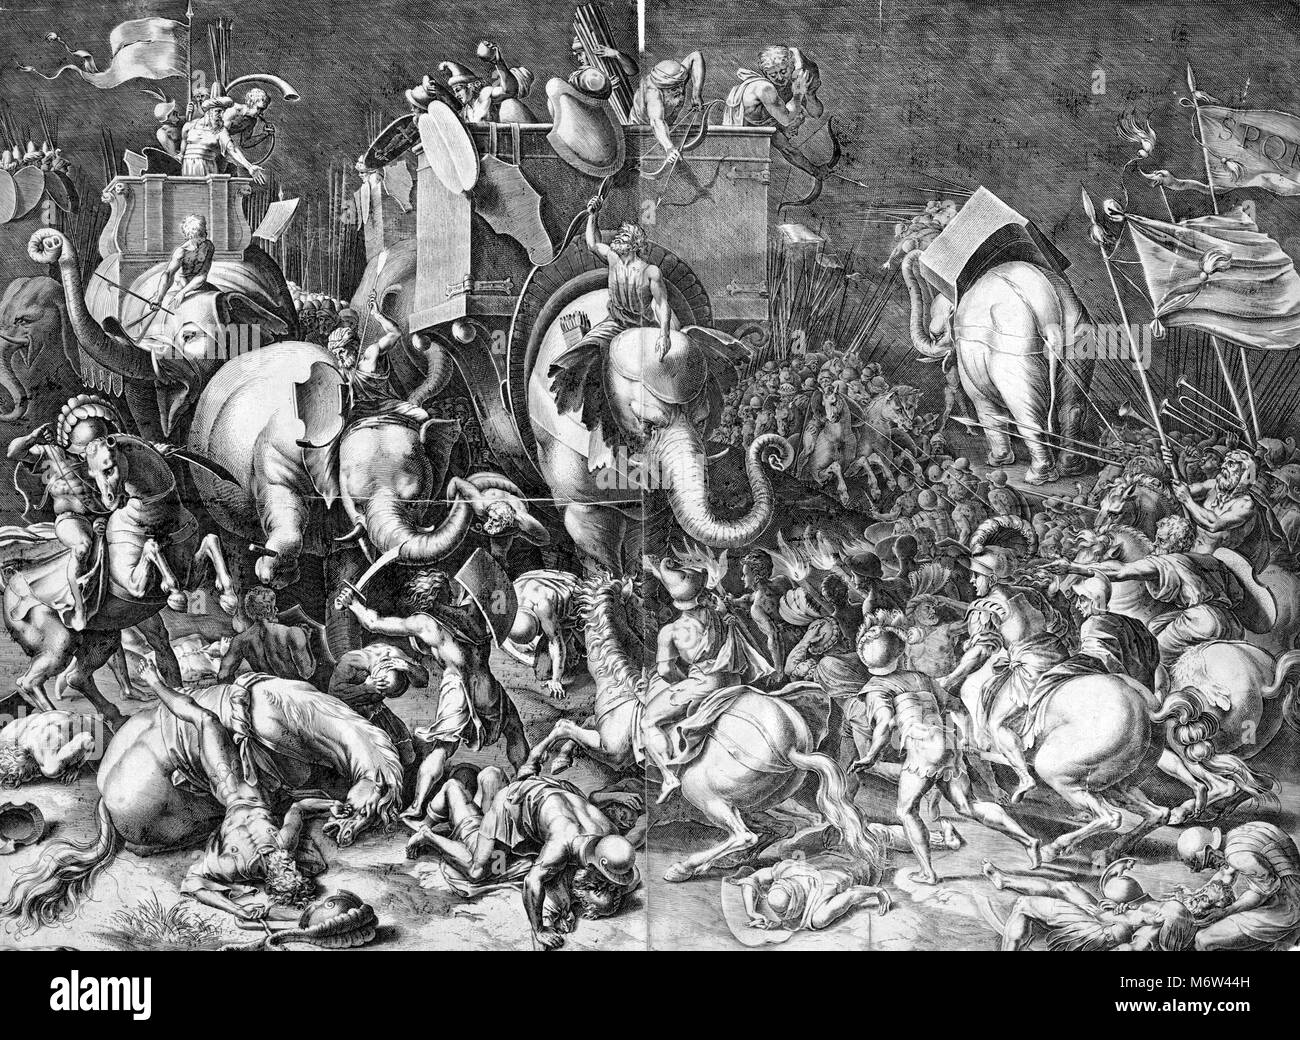 Gravure illustrant la bataille de Zama - se sont battus en 202 av. J.-C. près de Zama (Tunisie), qui marque la fin de la Deuxième Guerre punique. Gravure d'après une peinture de Cornelis Cort (1533-1578). L'image dépeint Scipion l'africain à cheval avec des soldats romains engager Hannibal, école un éléphant de guerre, pendant la bataille de Zama. Banque D'Images